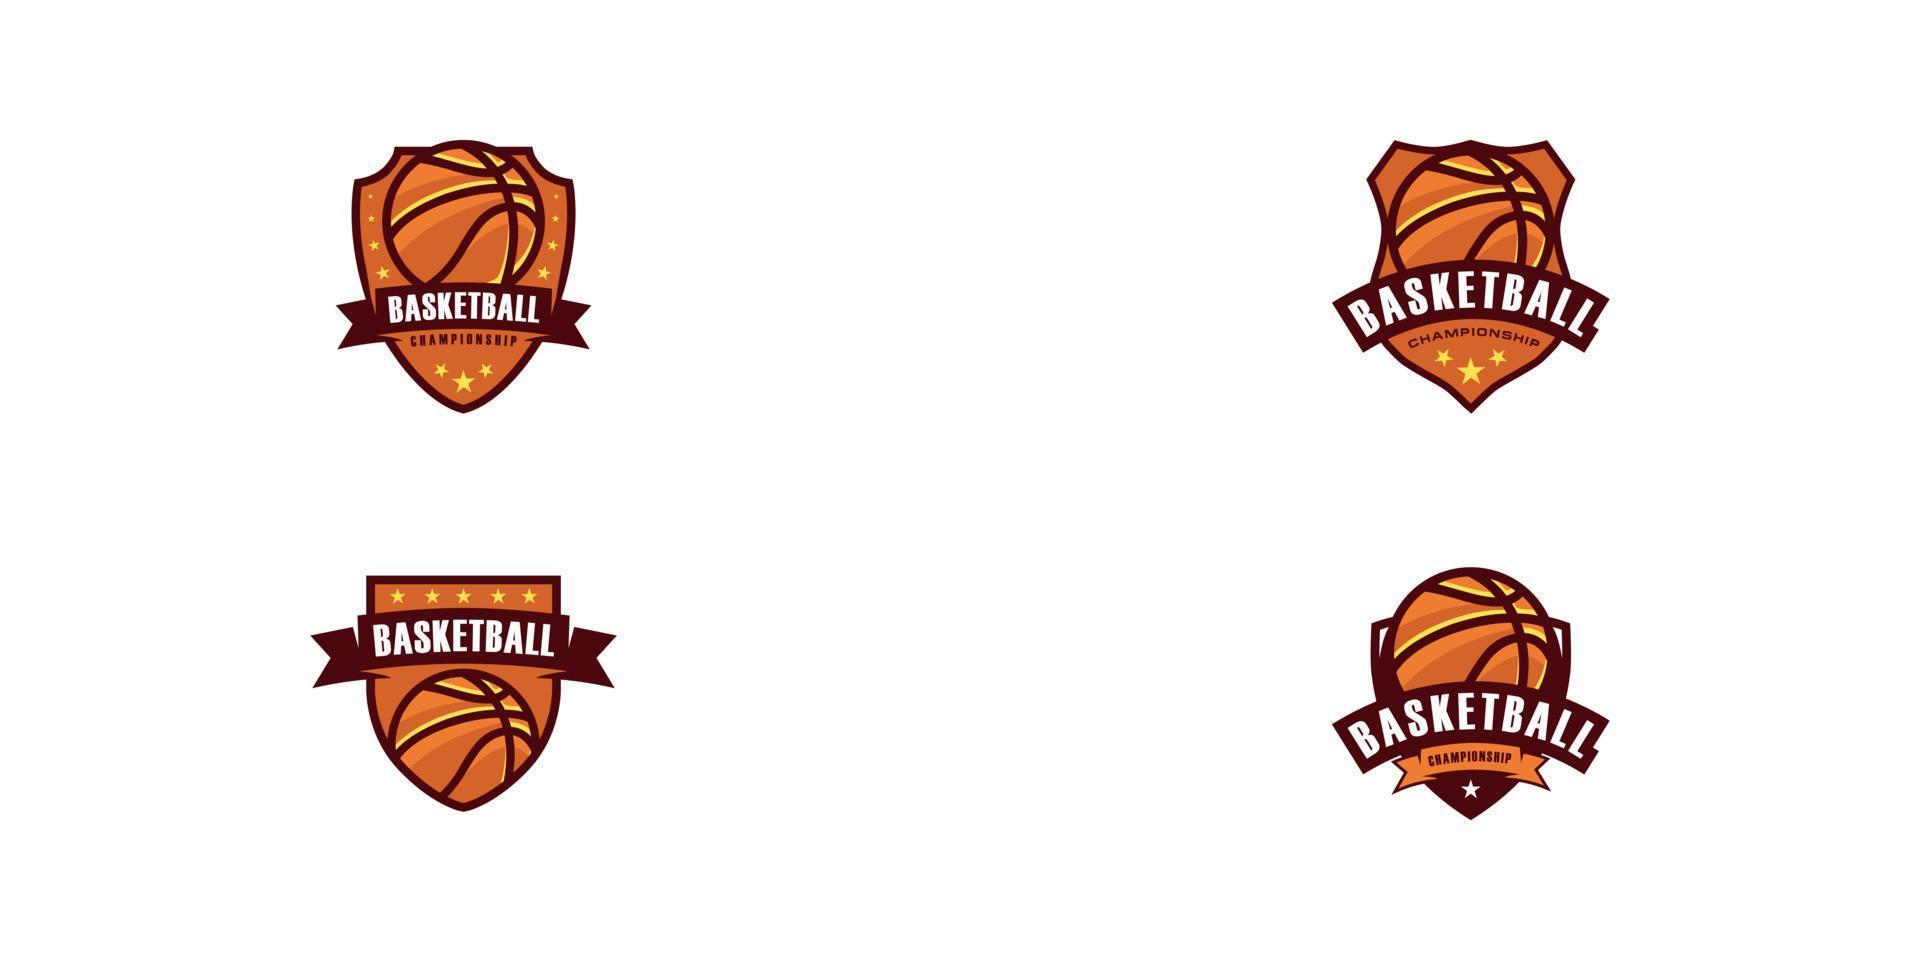 logo du championnat de basket-ball avec bouclier vecteur